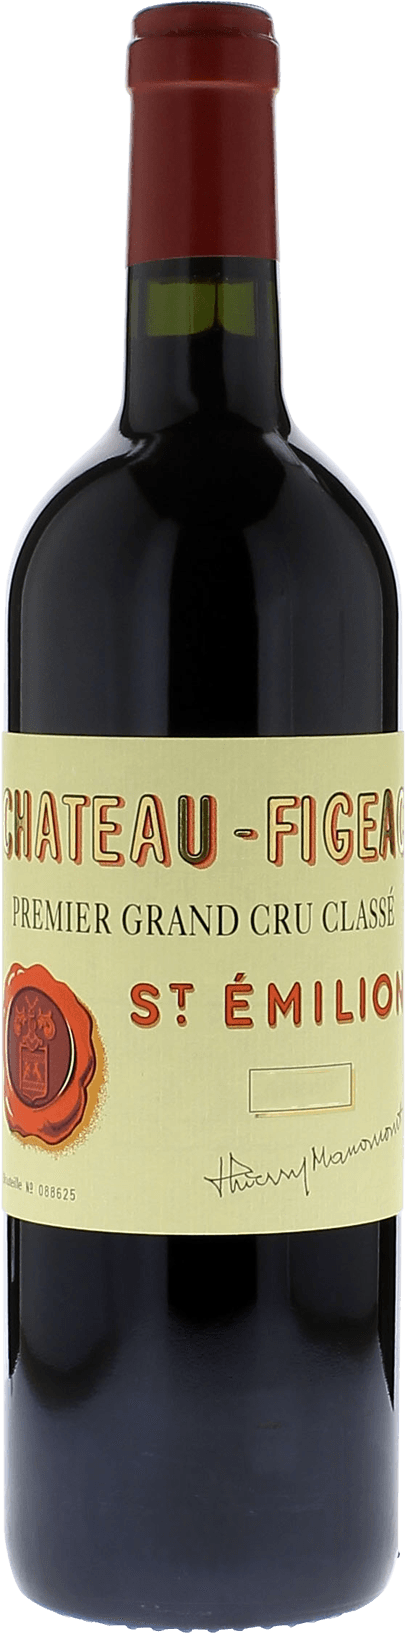 Figeac 2018 1er Grand cru class Saint-Emilion, Bordeaux rouge